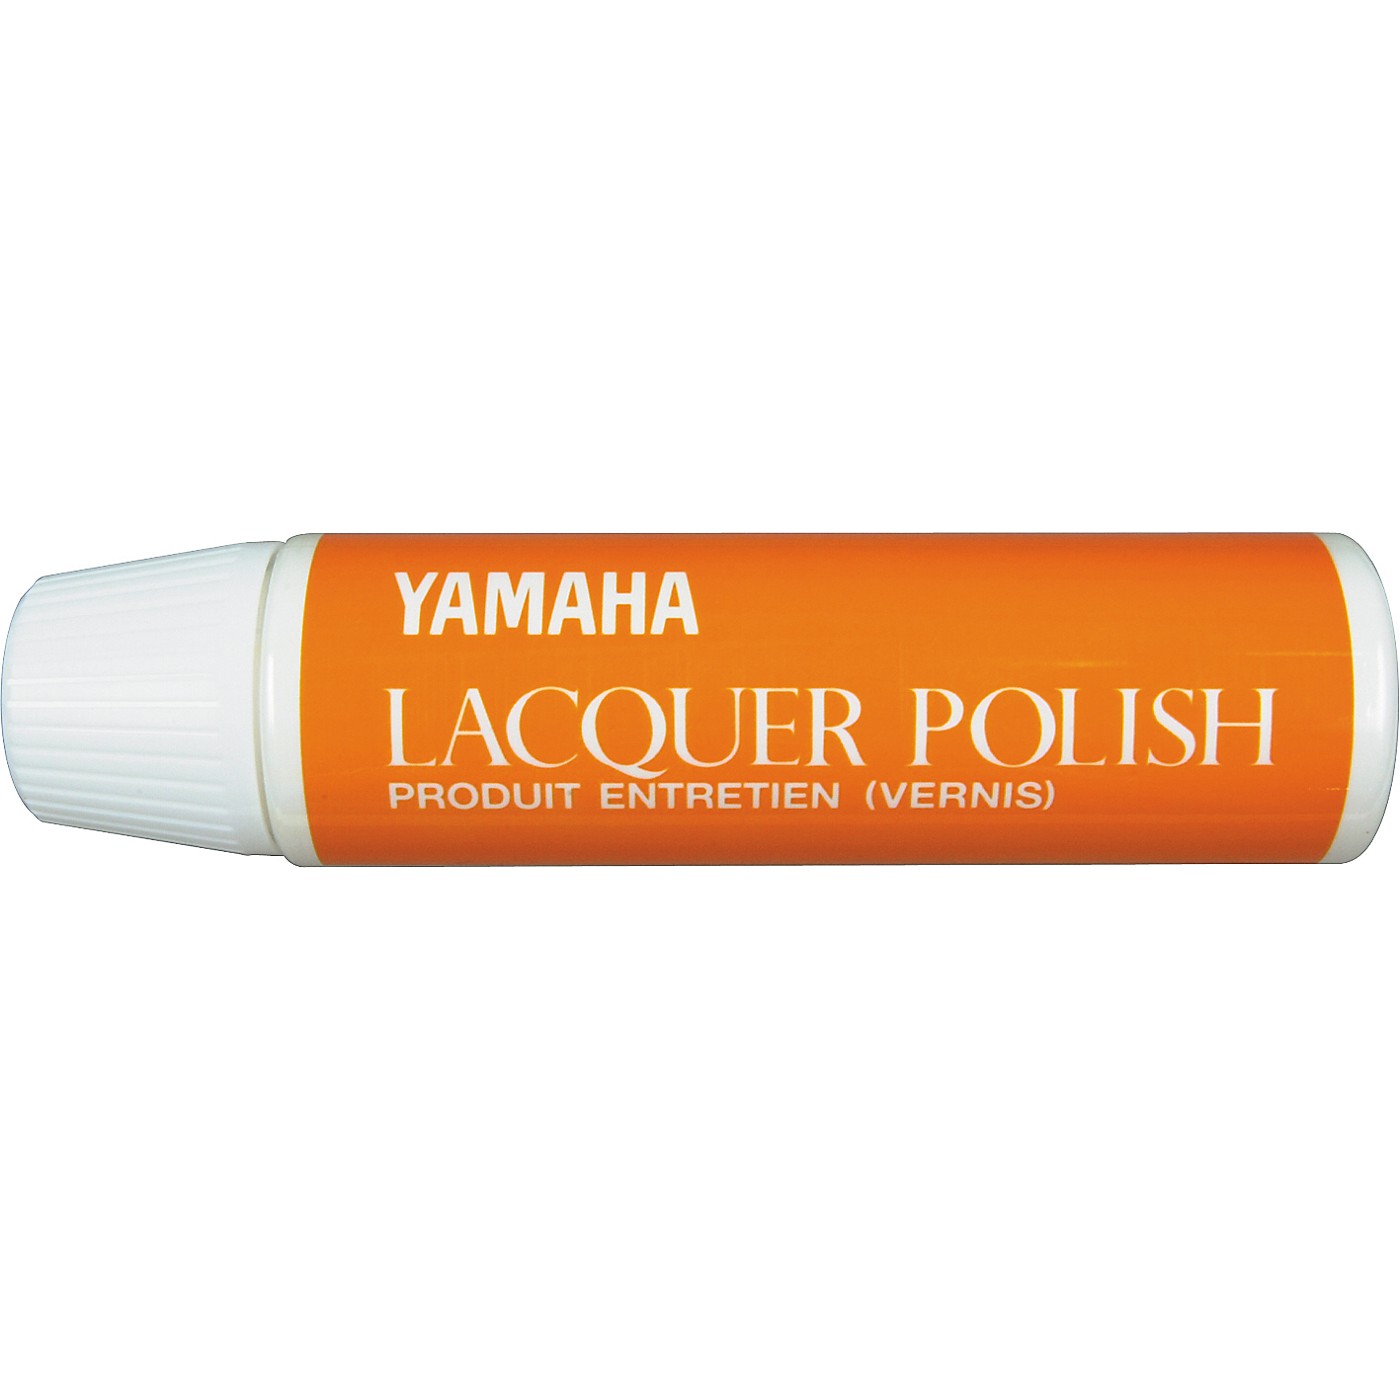 Yamaha Lacquer Polish thumbnail